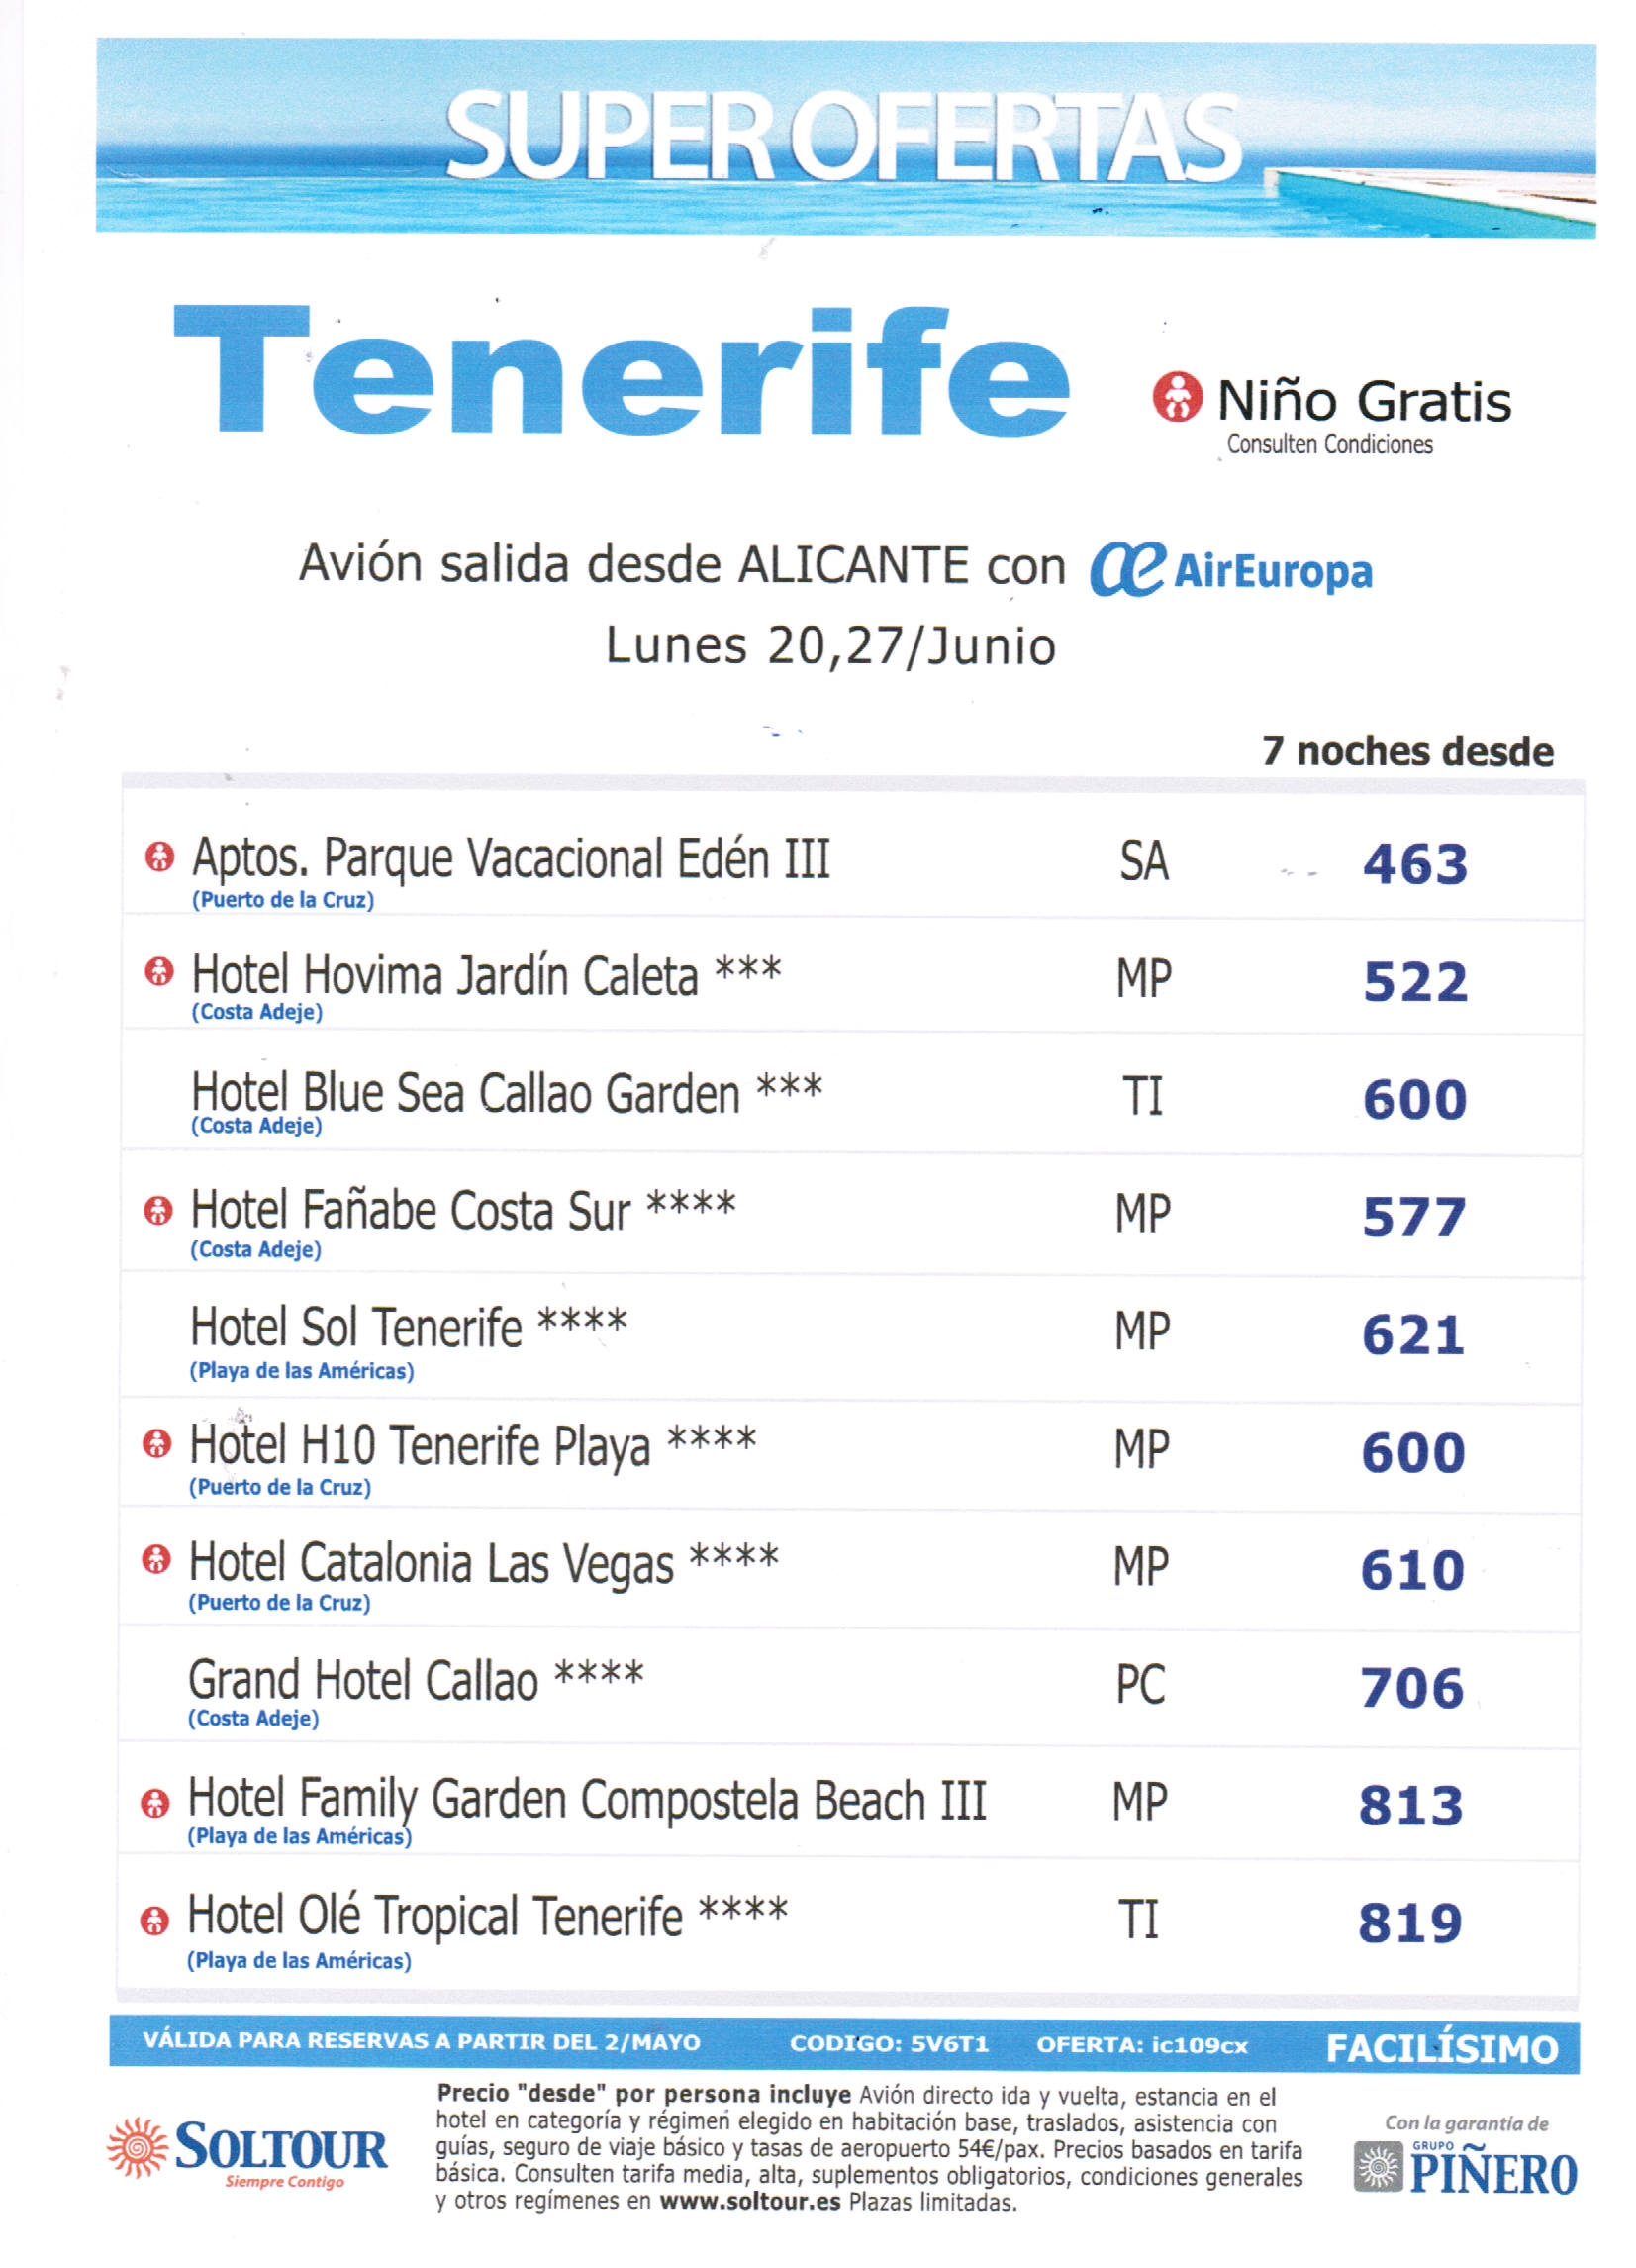 oferta Tenerife vuelos directos desde Alicante  7 noches